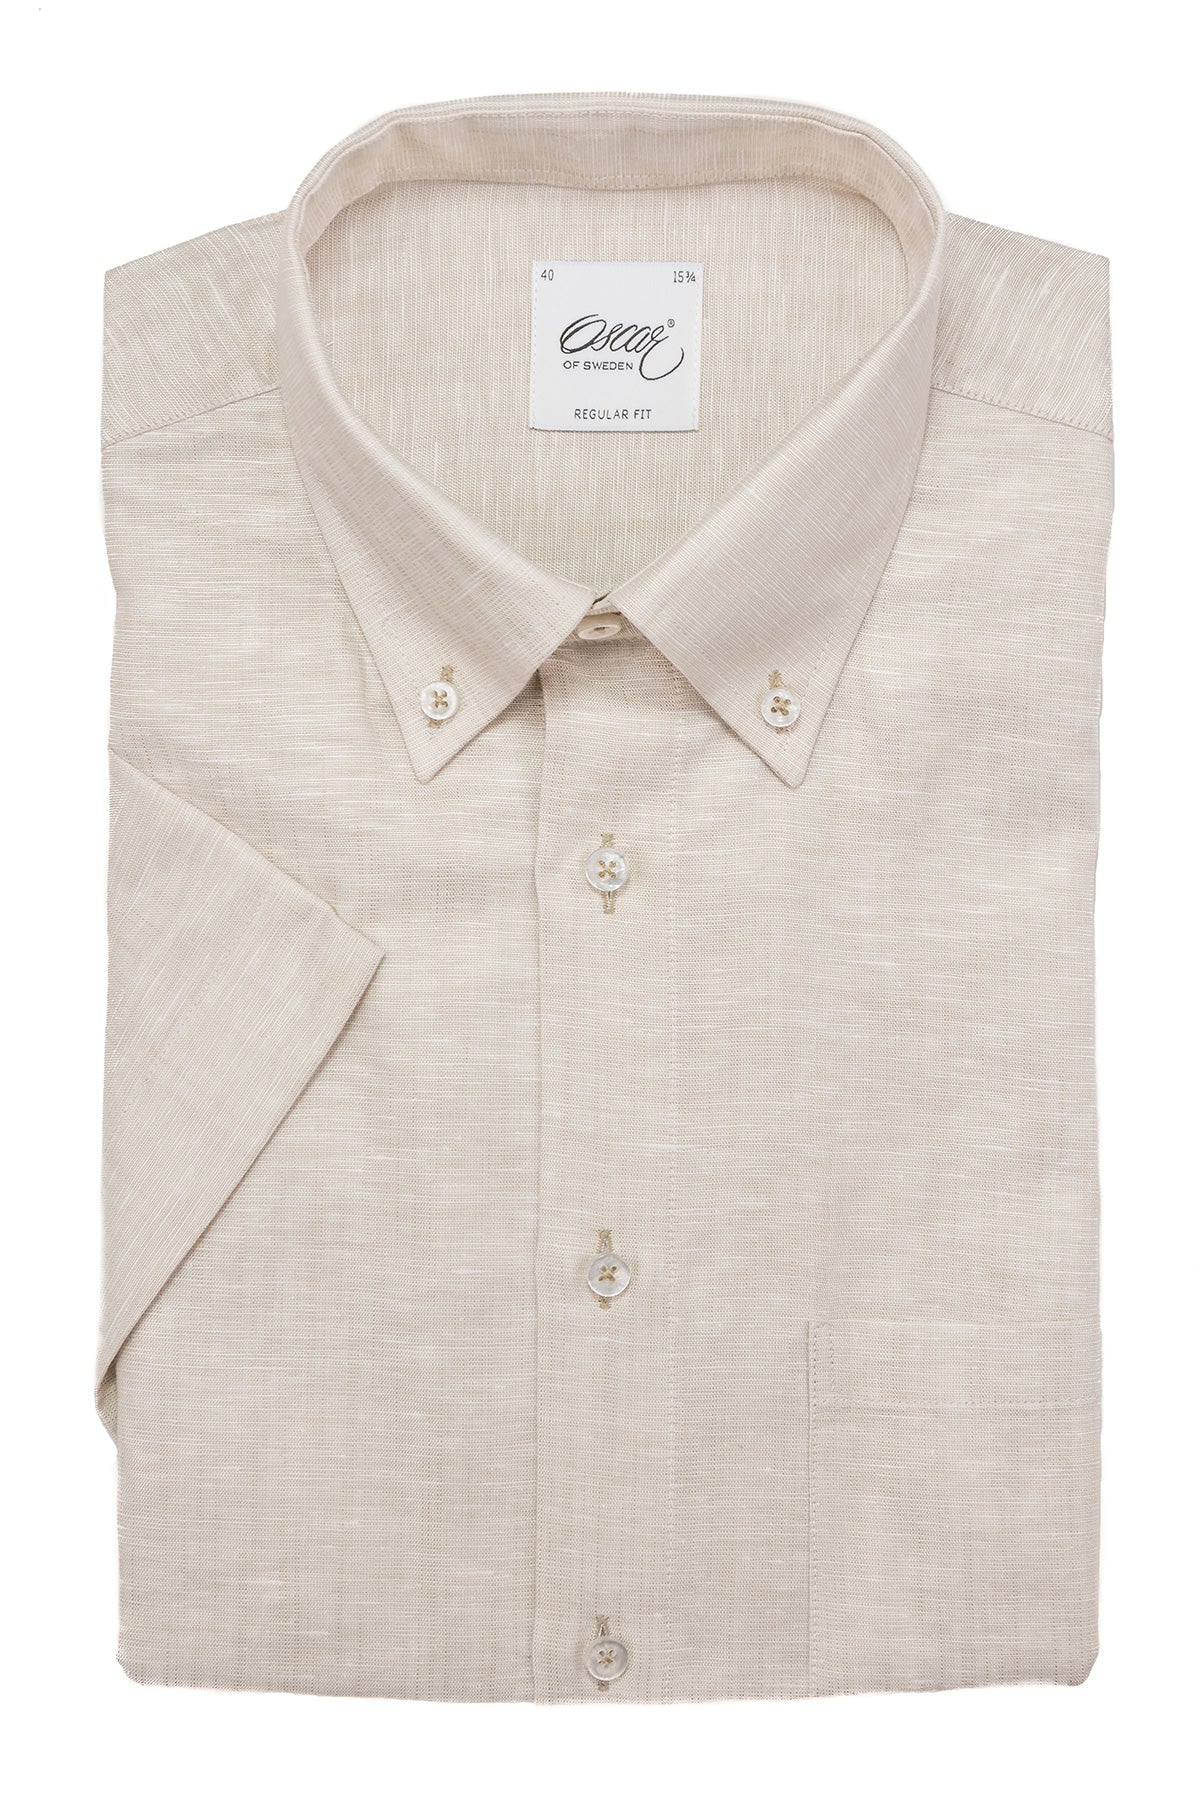 Beige button down short sleeve regular fit shirt